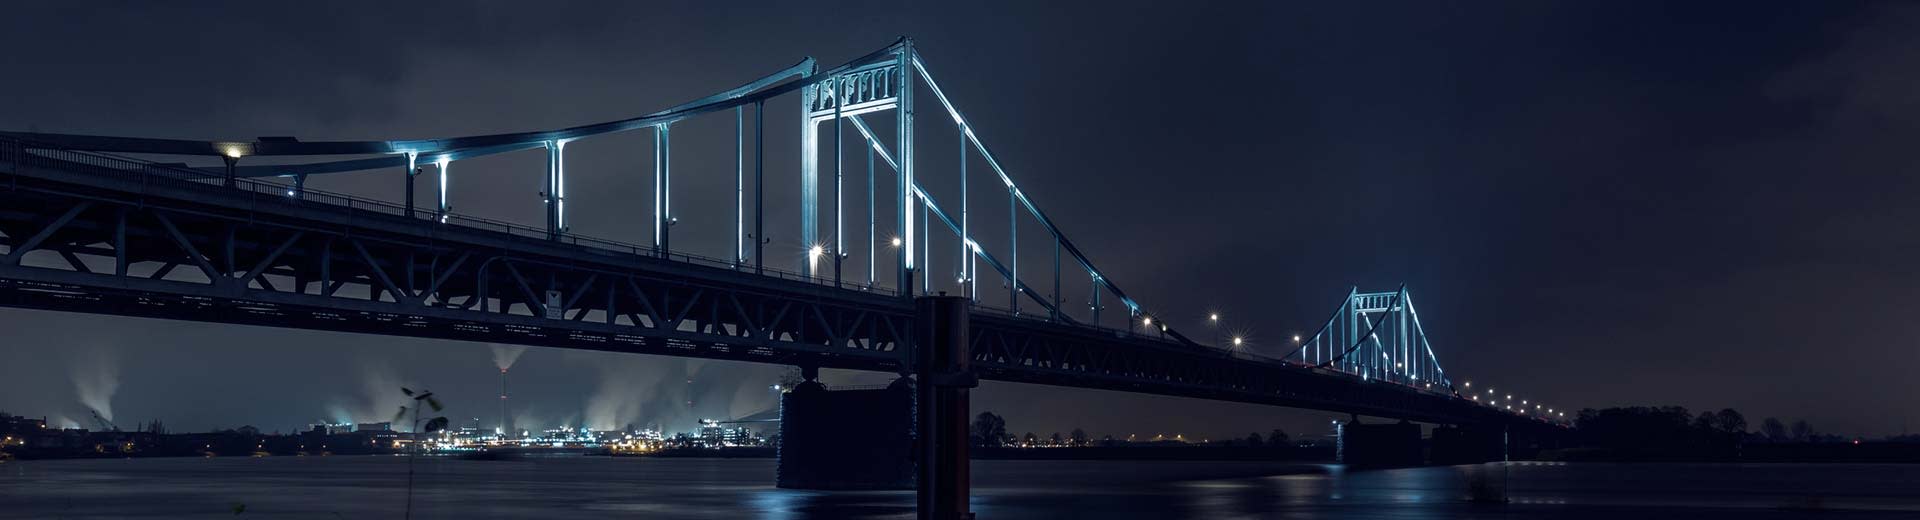 夜幕下的克雷菲尔德大型吊桥。